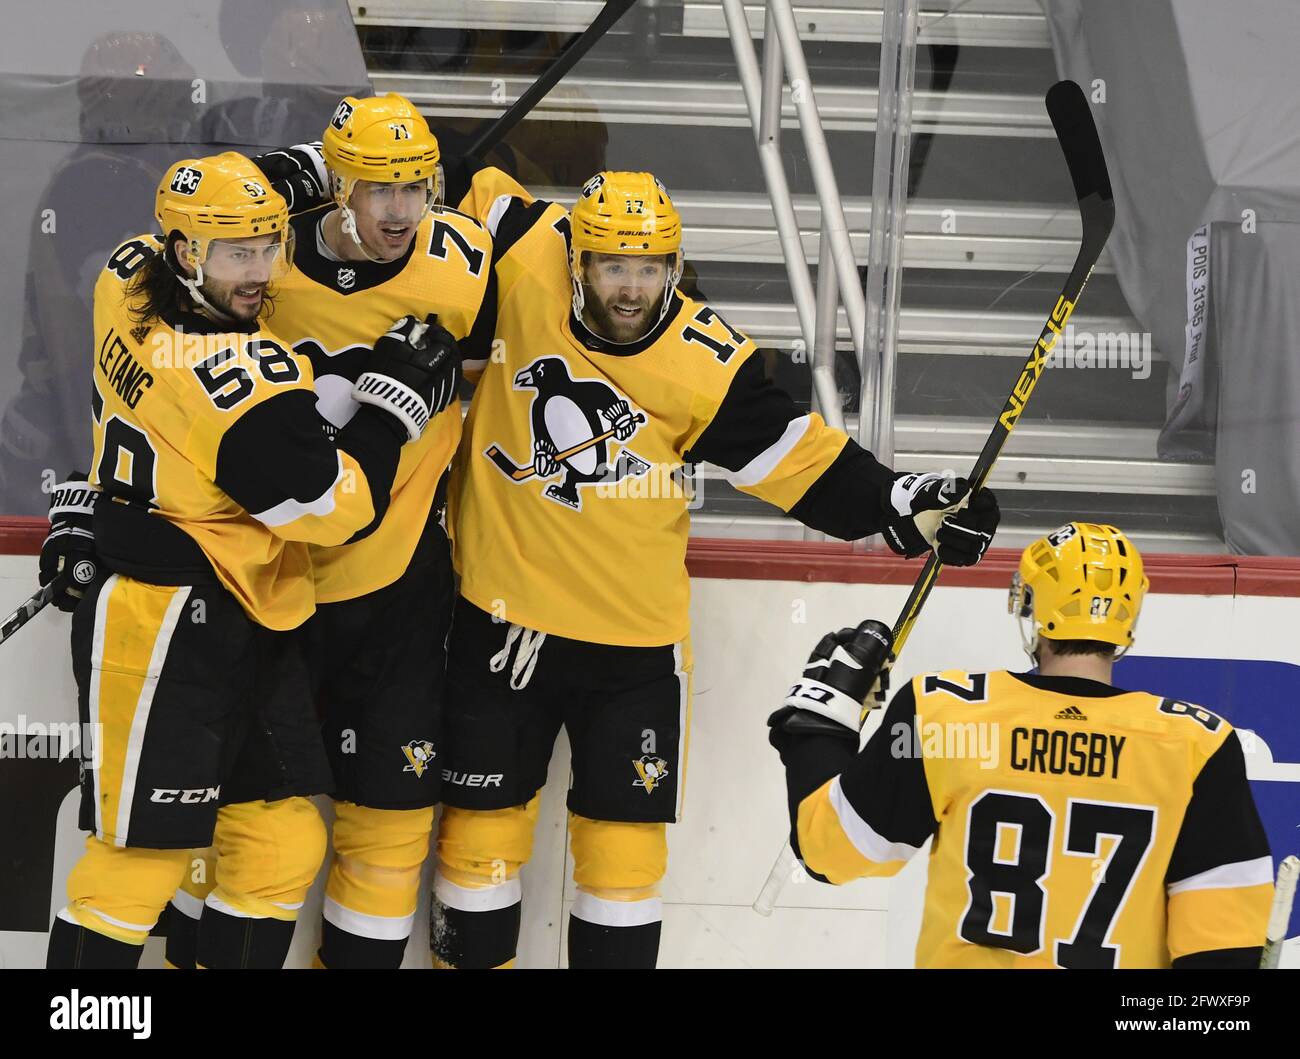 Crosby, Malkin score as Penguins beat Blackhawks 5-3